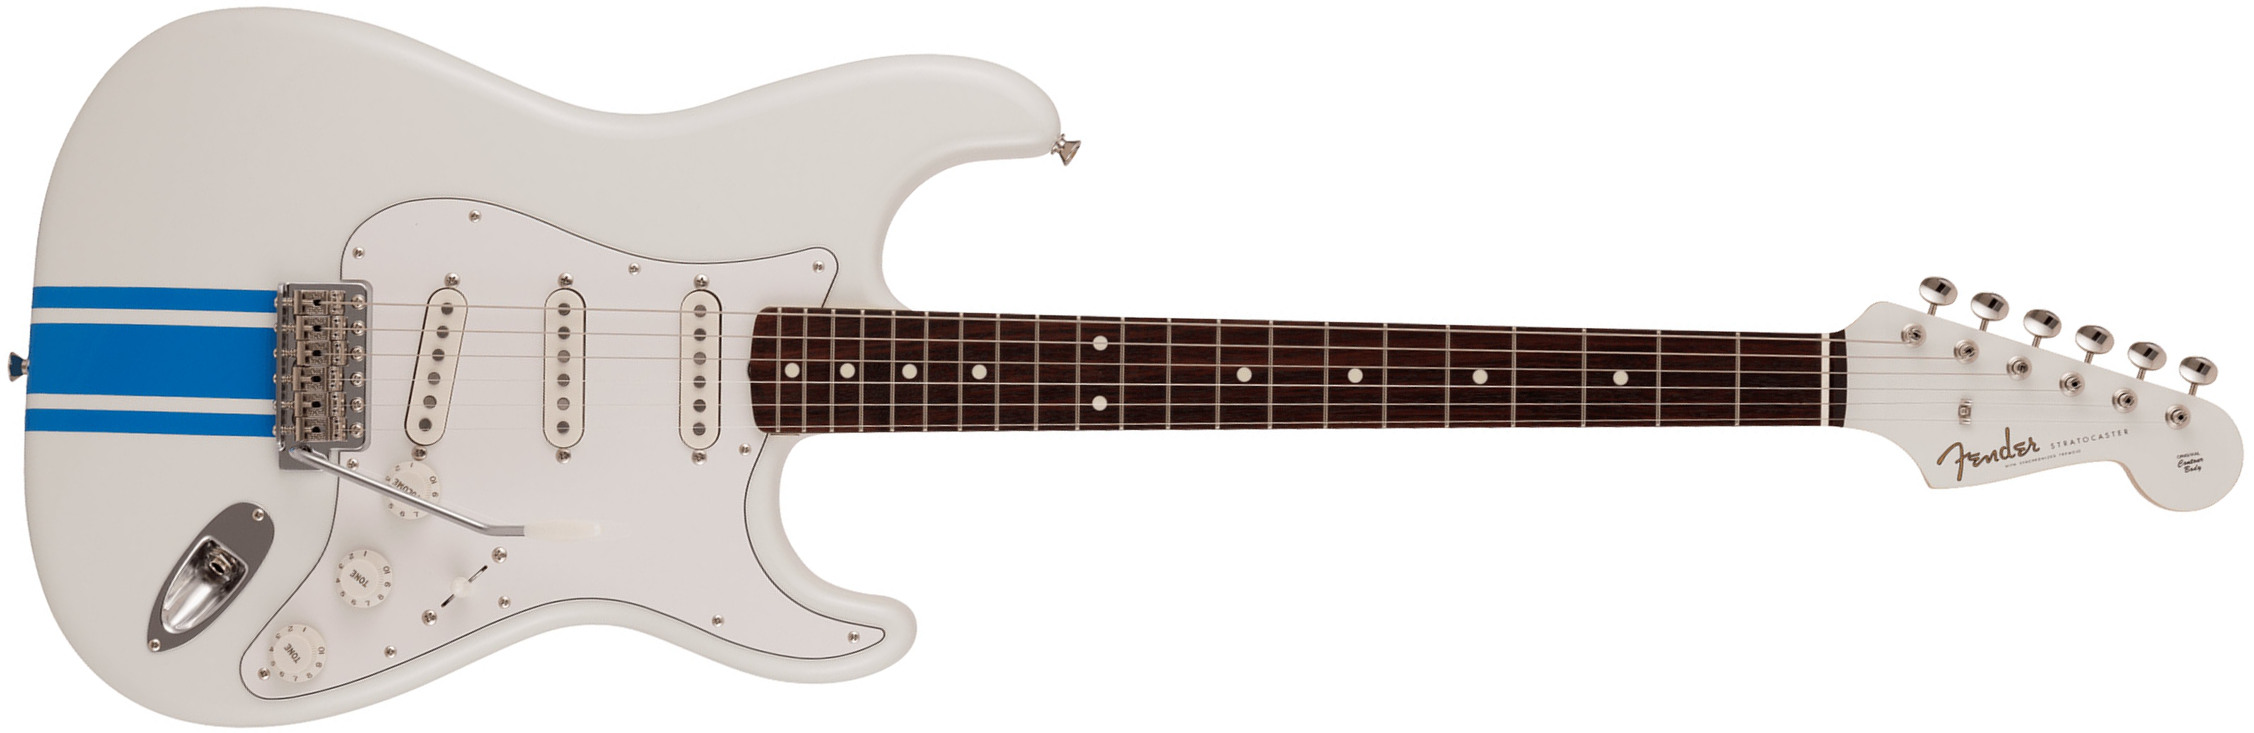 Fender Strat Traditional 60s Mij Jap 3s Trem Rw - Olympic White W/ Blue Competition Stripe - Guitare Électrique Forme Str - Main picture